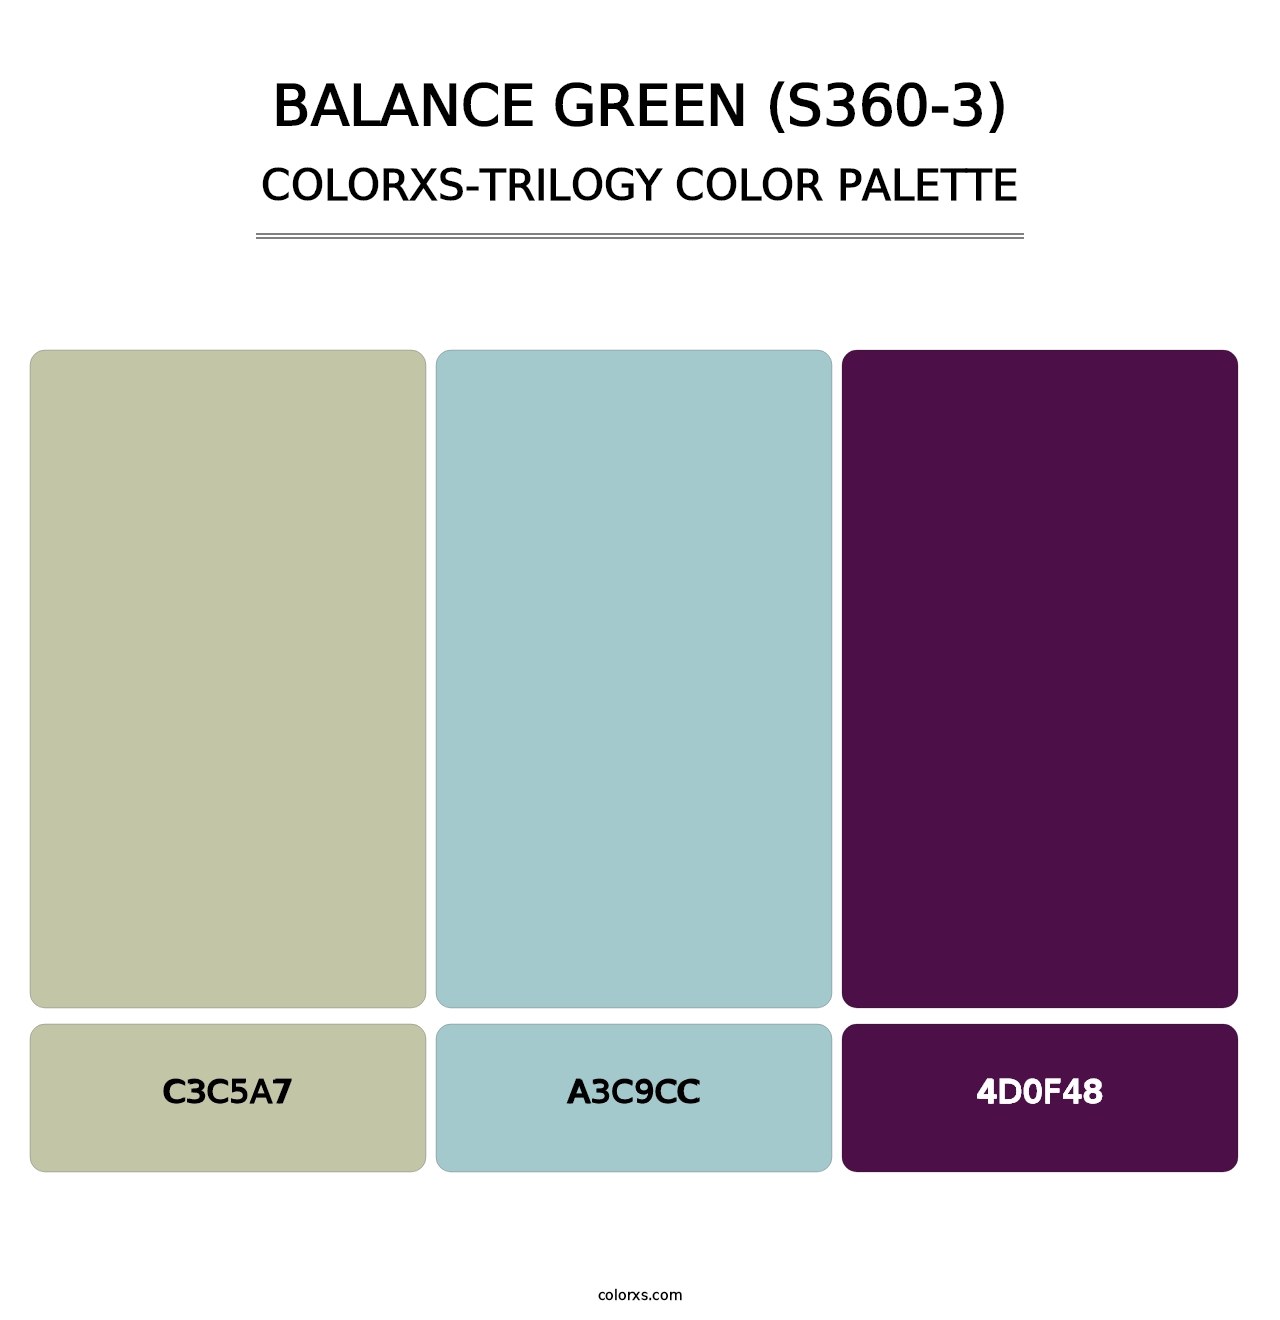 Balance Green (S360-3) - Colorxs Trilogy Palette